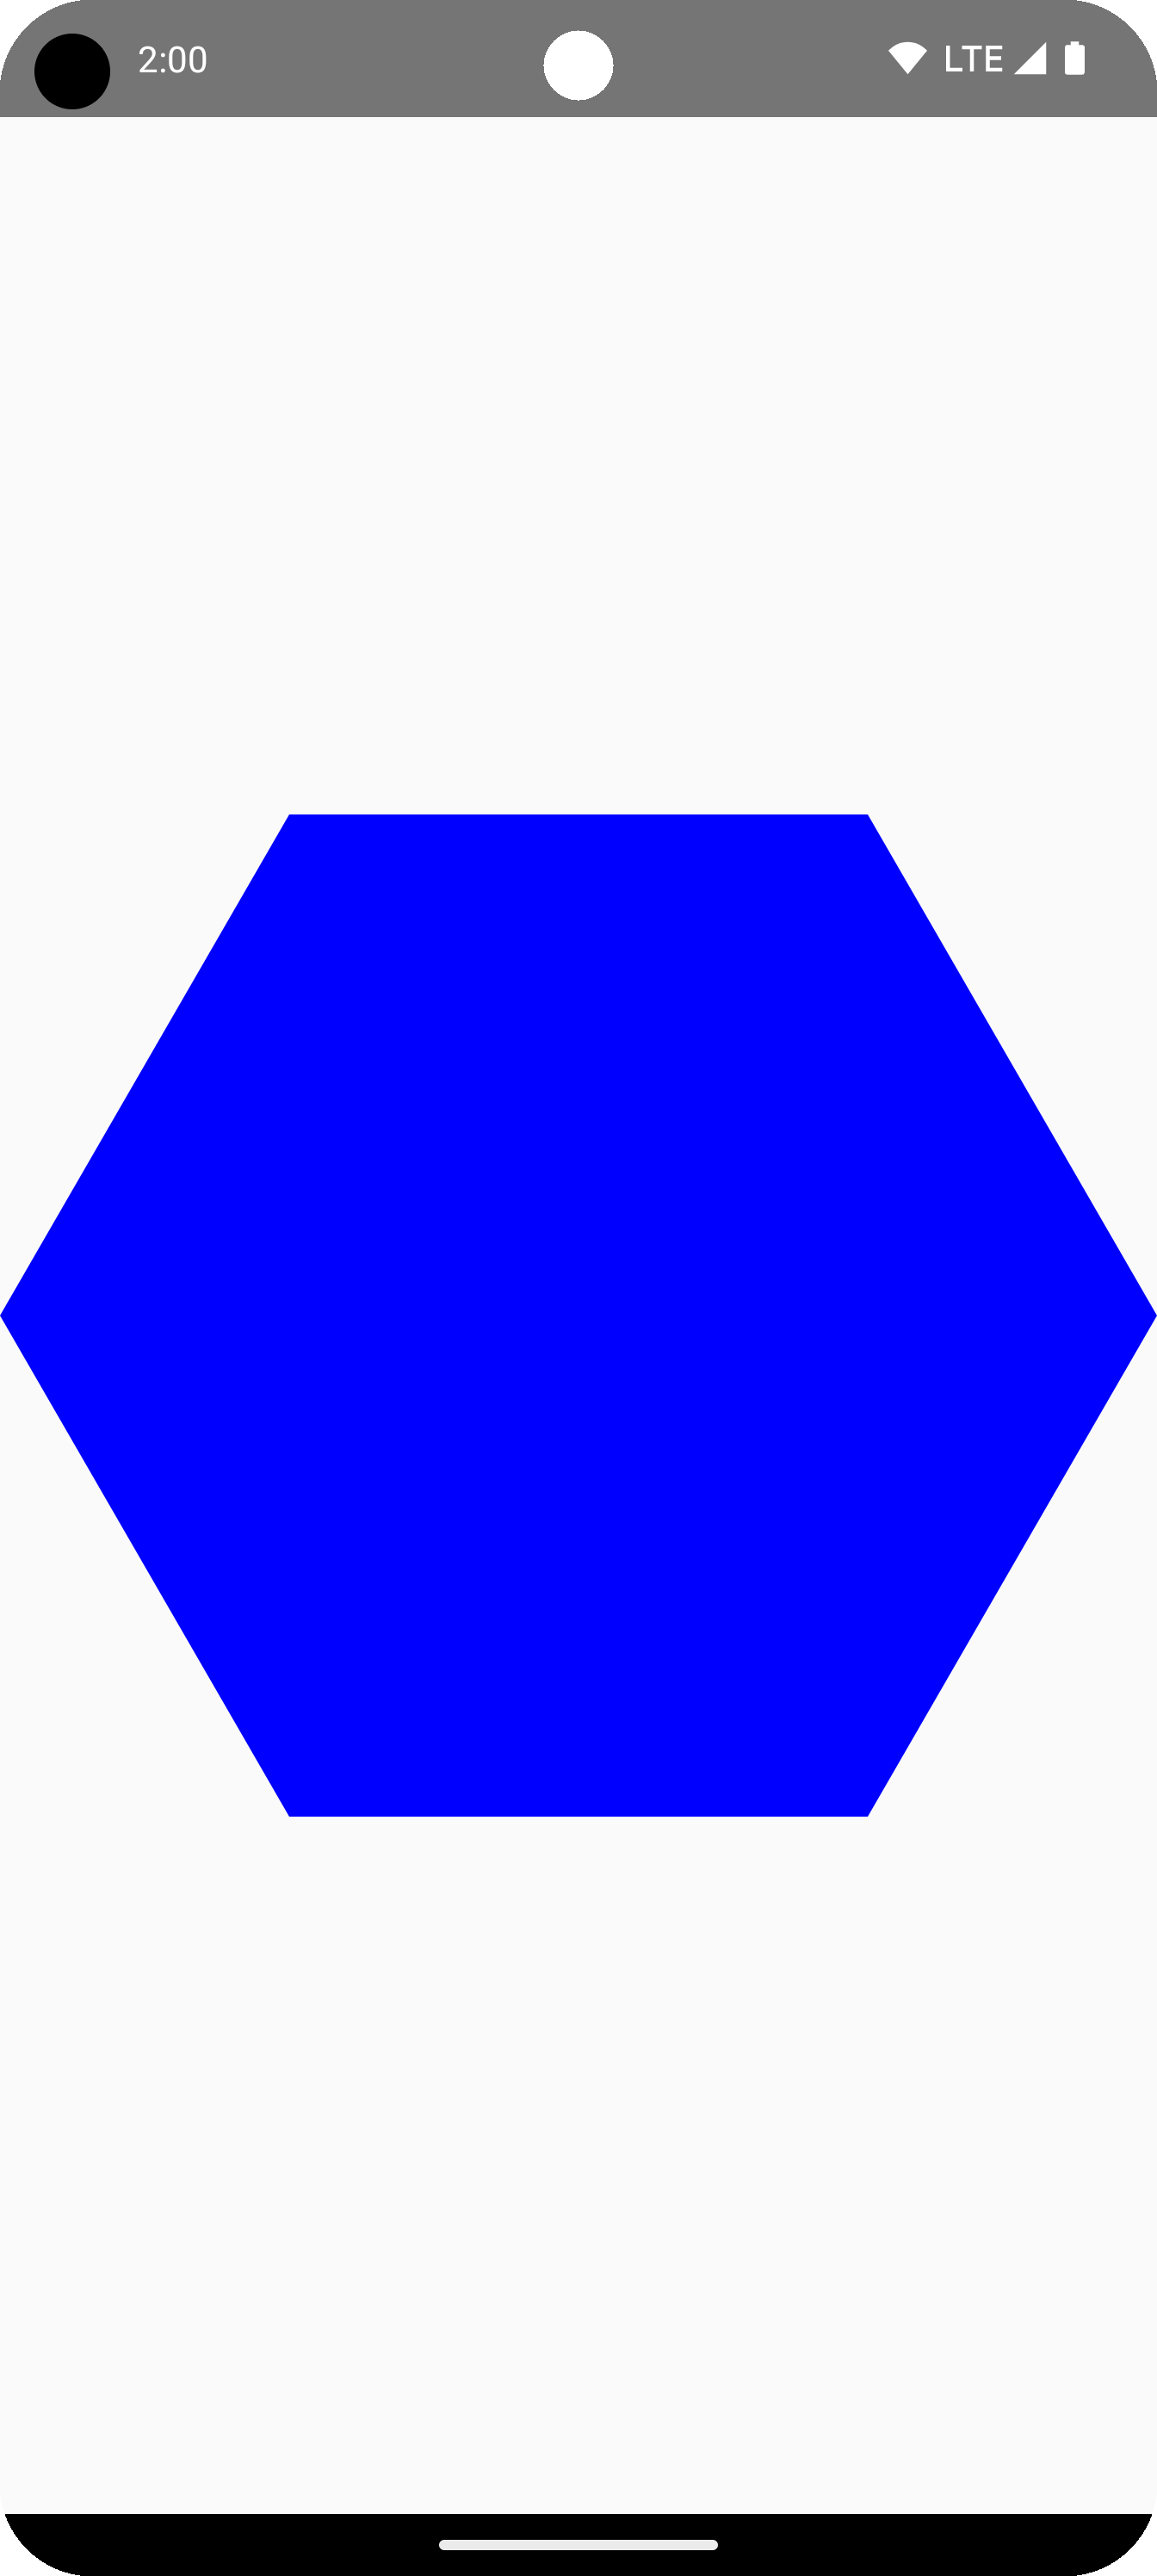 그리기 영역 중앙에 있는 파란색 육각형